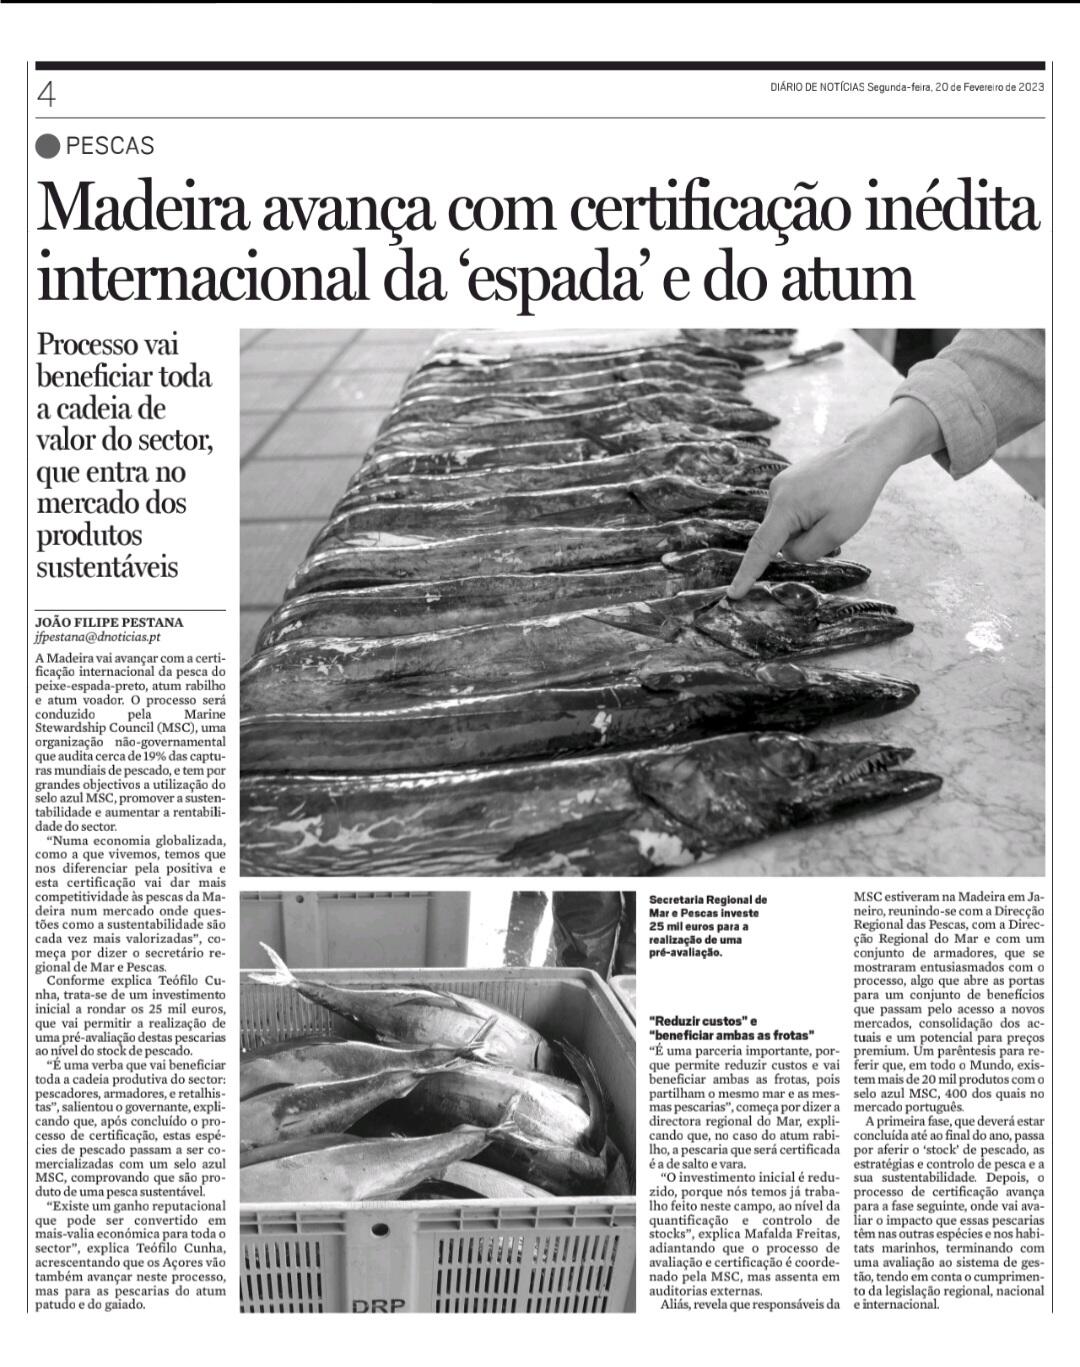 Madeira avança com certificação inédita internacionalmente da "espada" e do atum